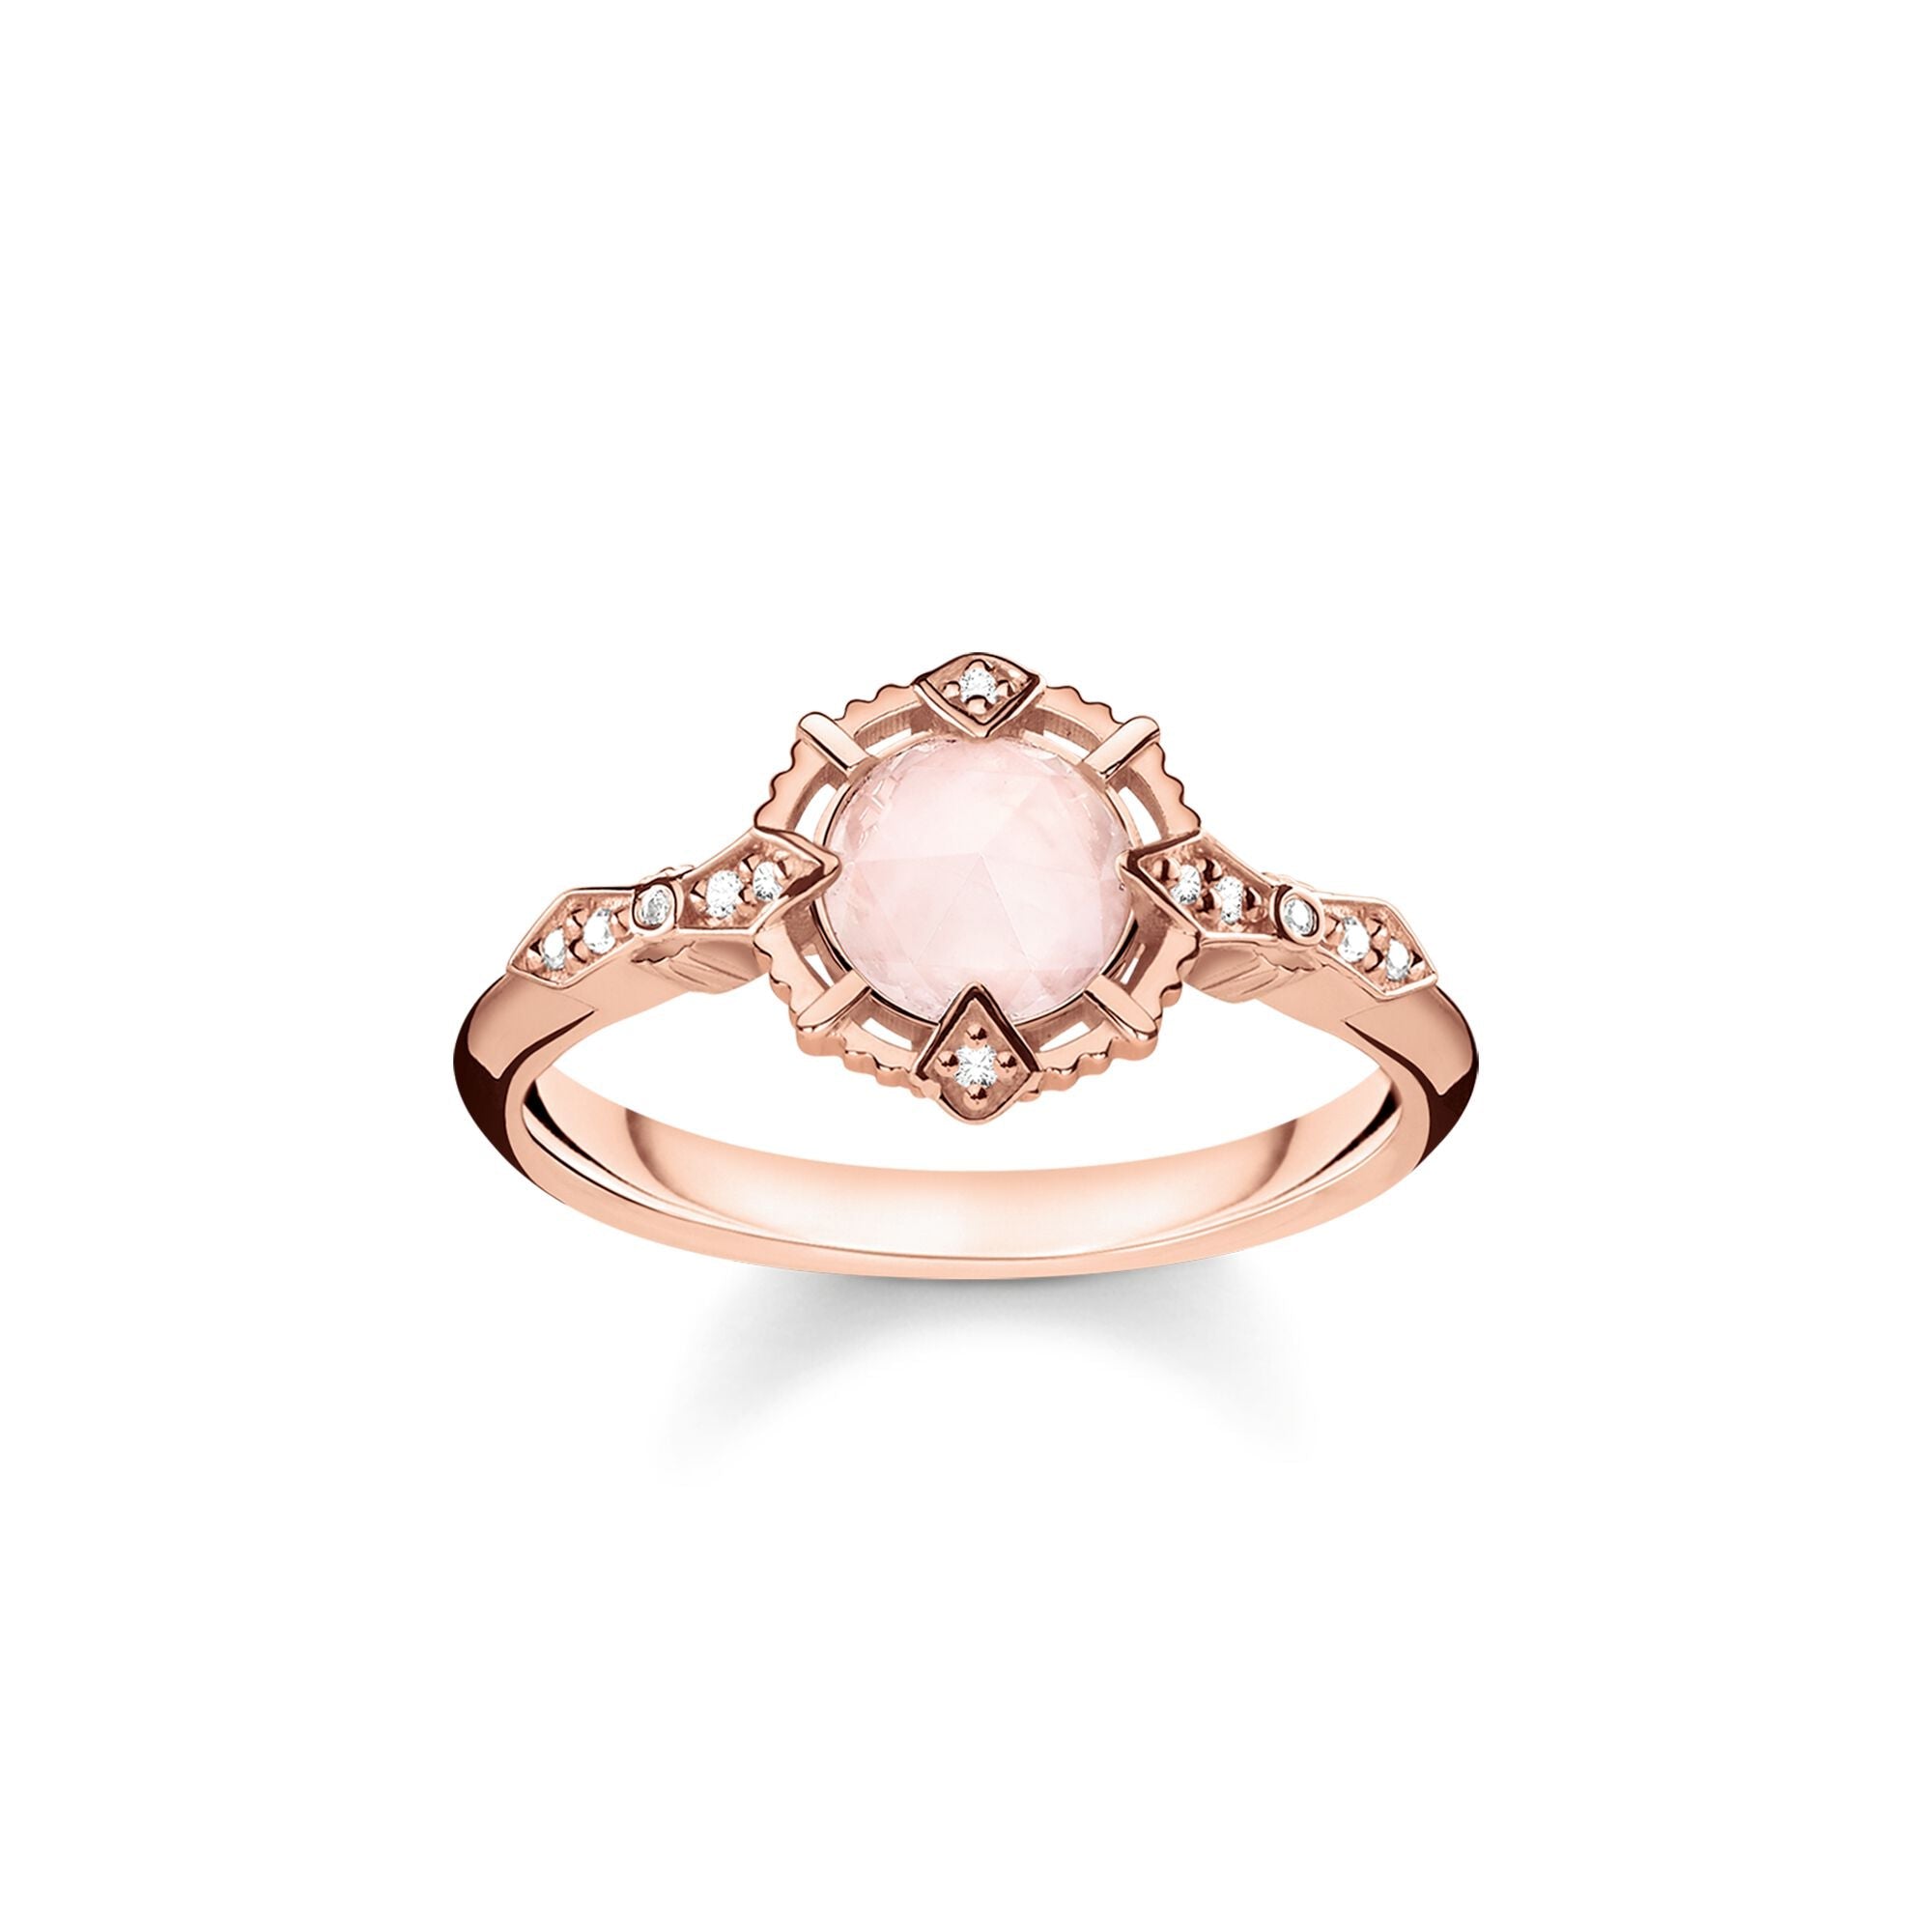 Thomas Sabo Vintage Rose Gold Rose Quartz Pink Diamond Ring D